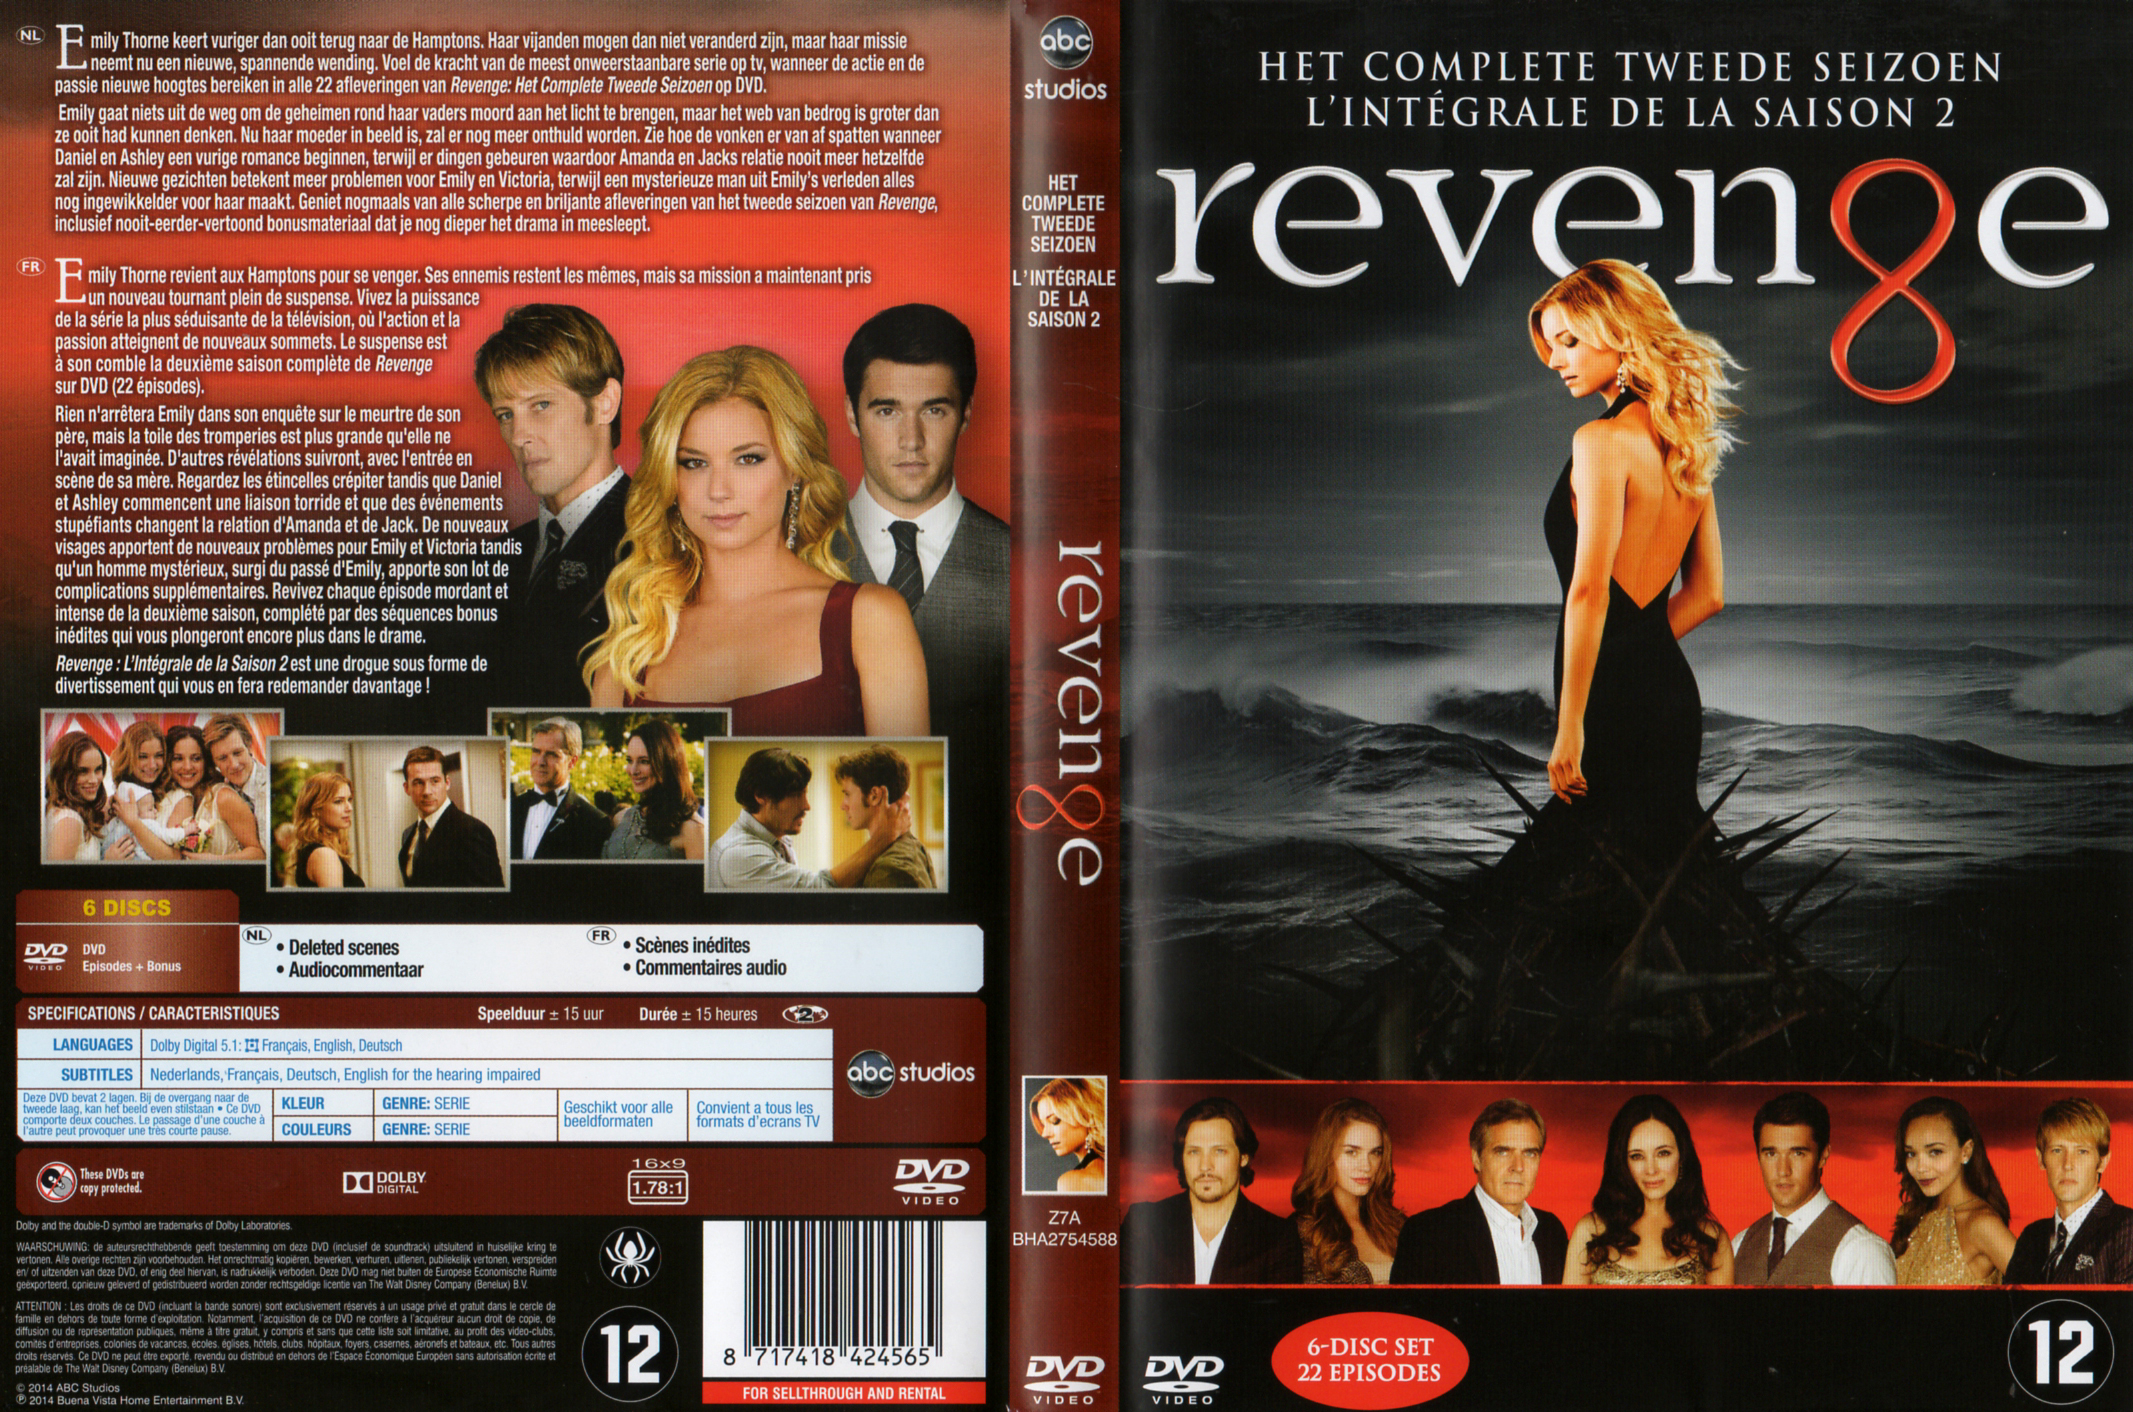 Jaquette DVD Revenge Saison 2